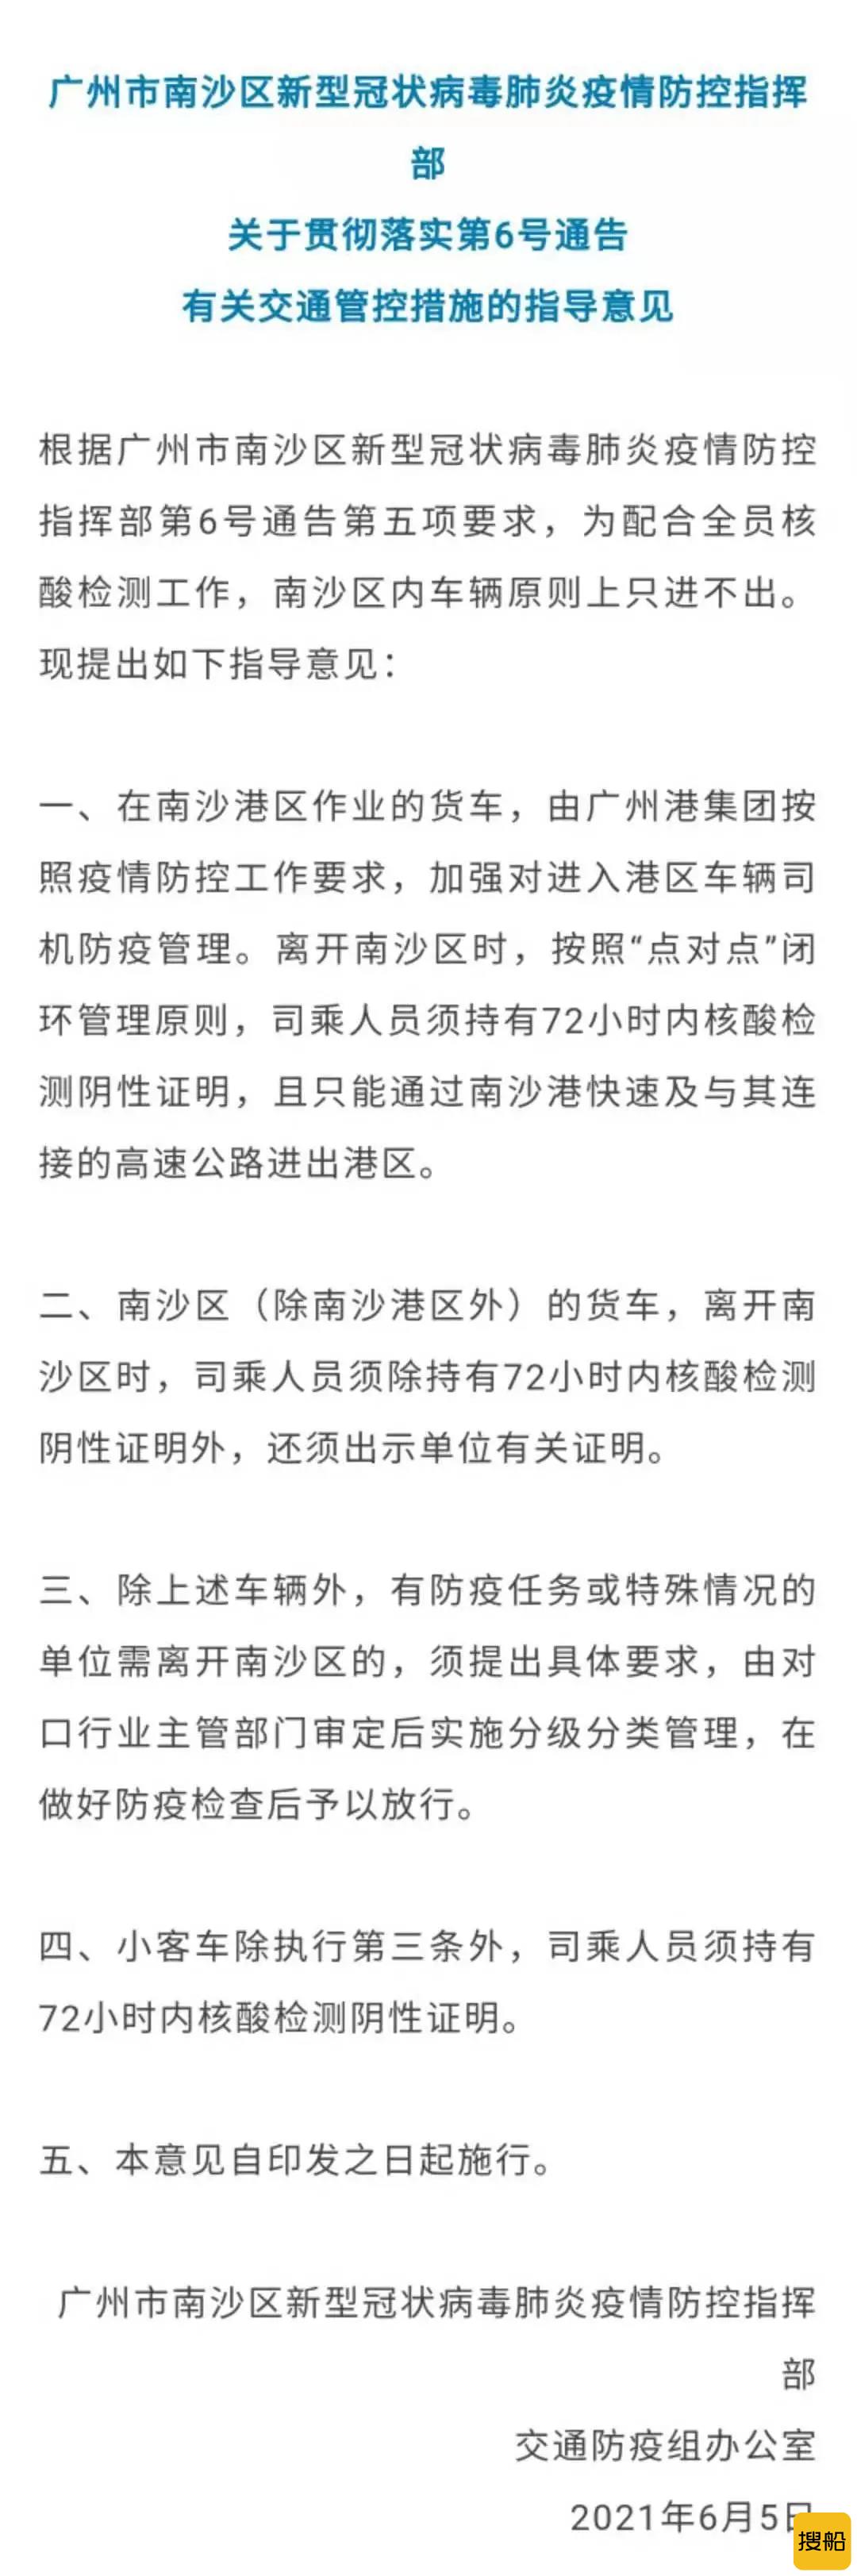 广州港发布关于南沙港区最新疫情防控措施的通告